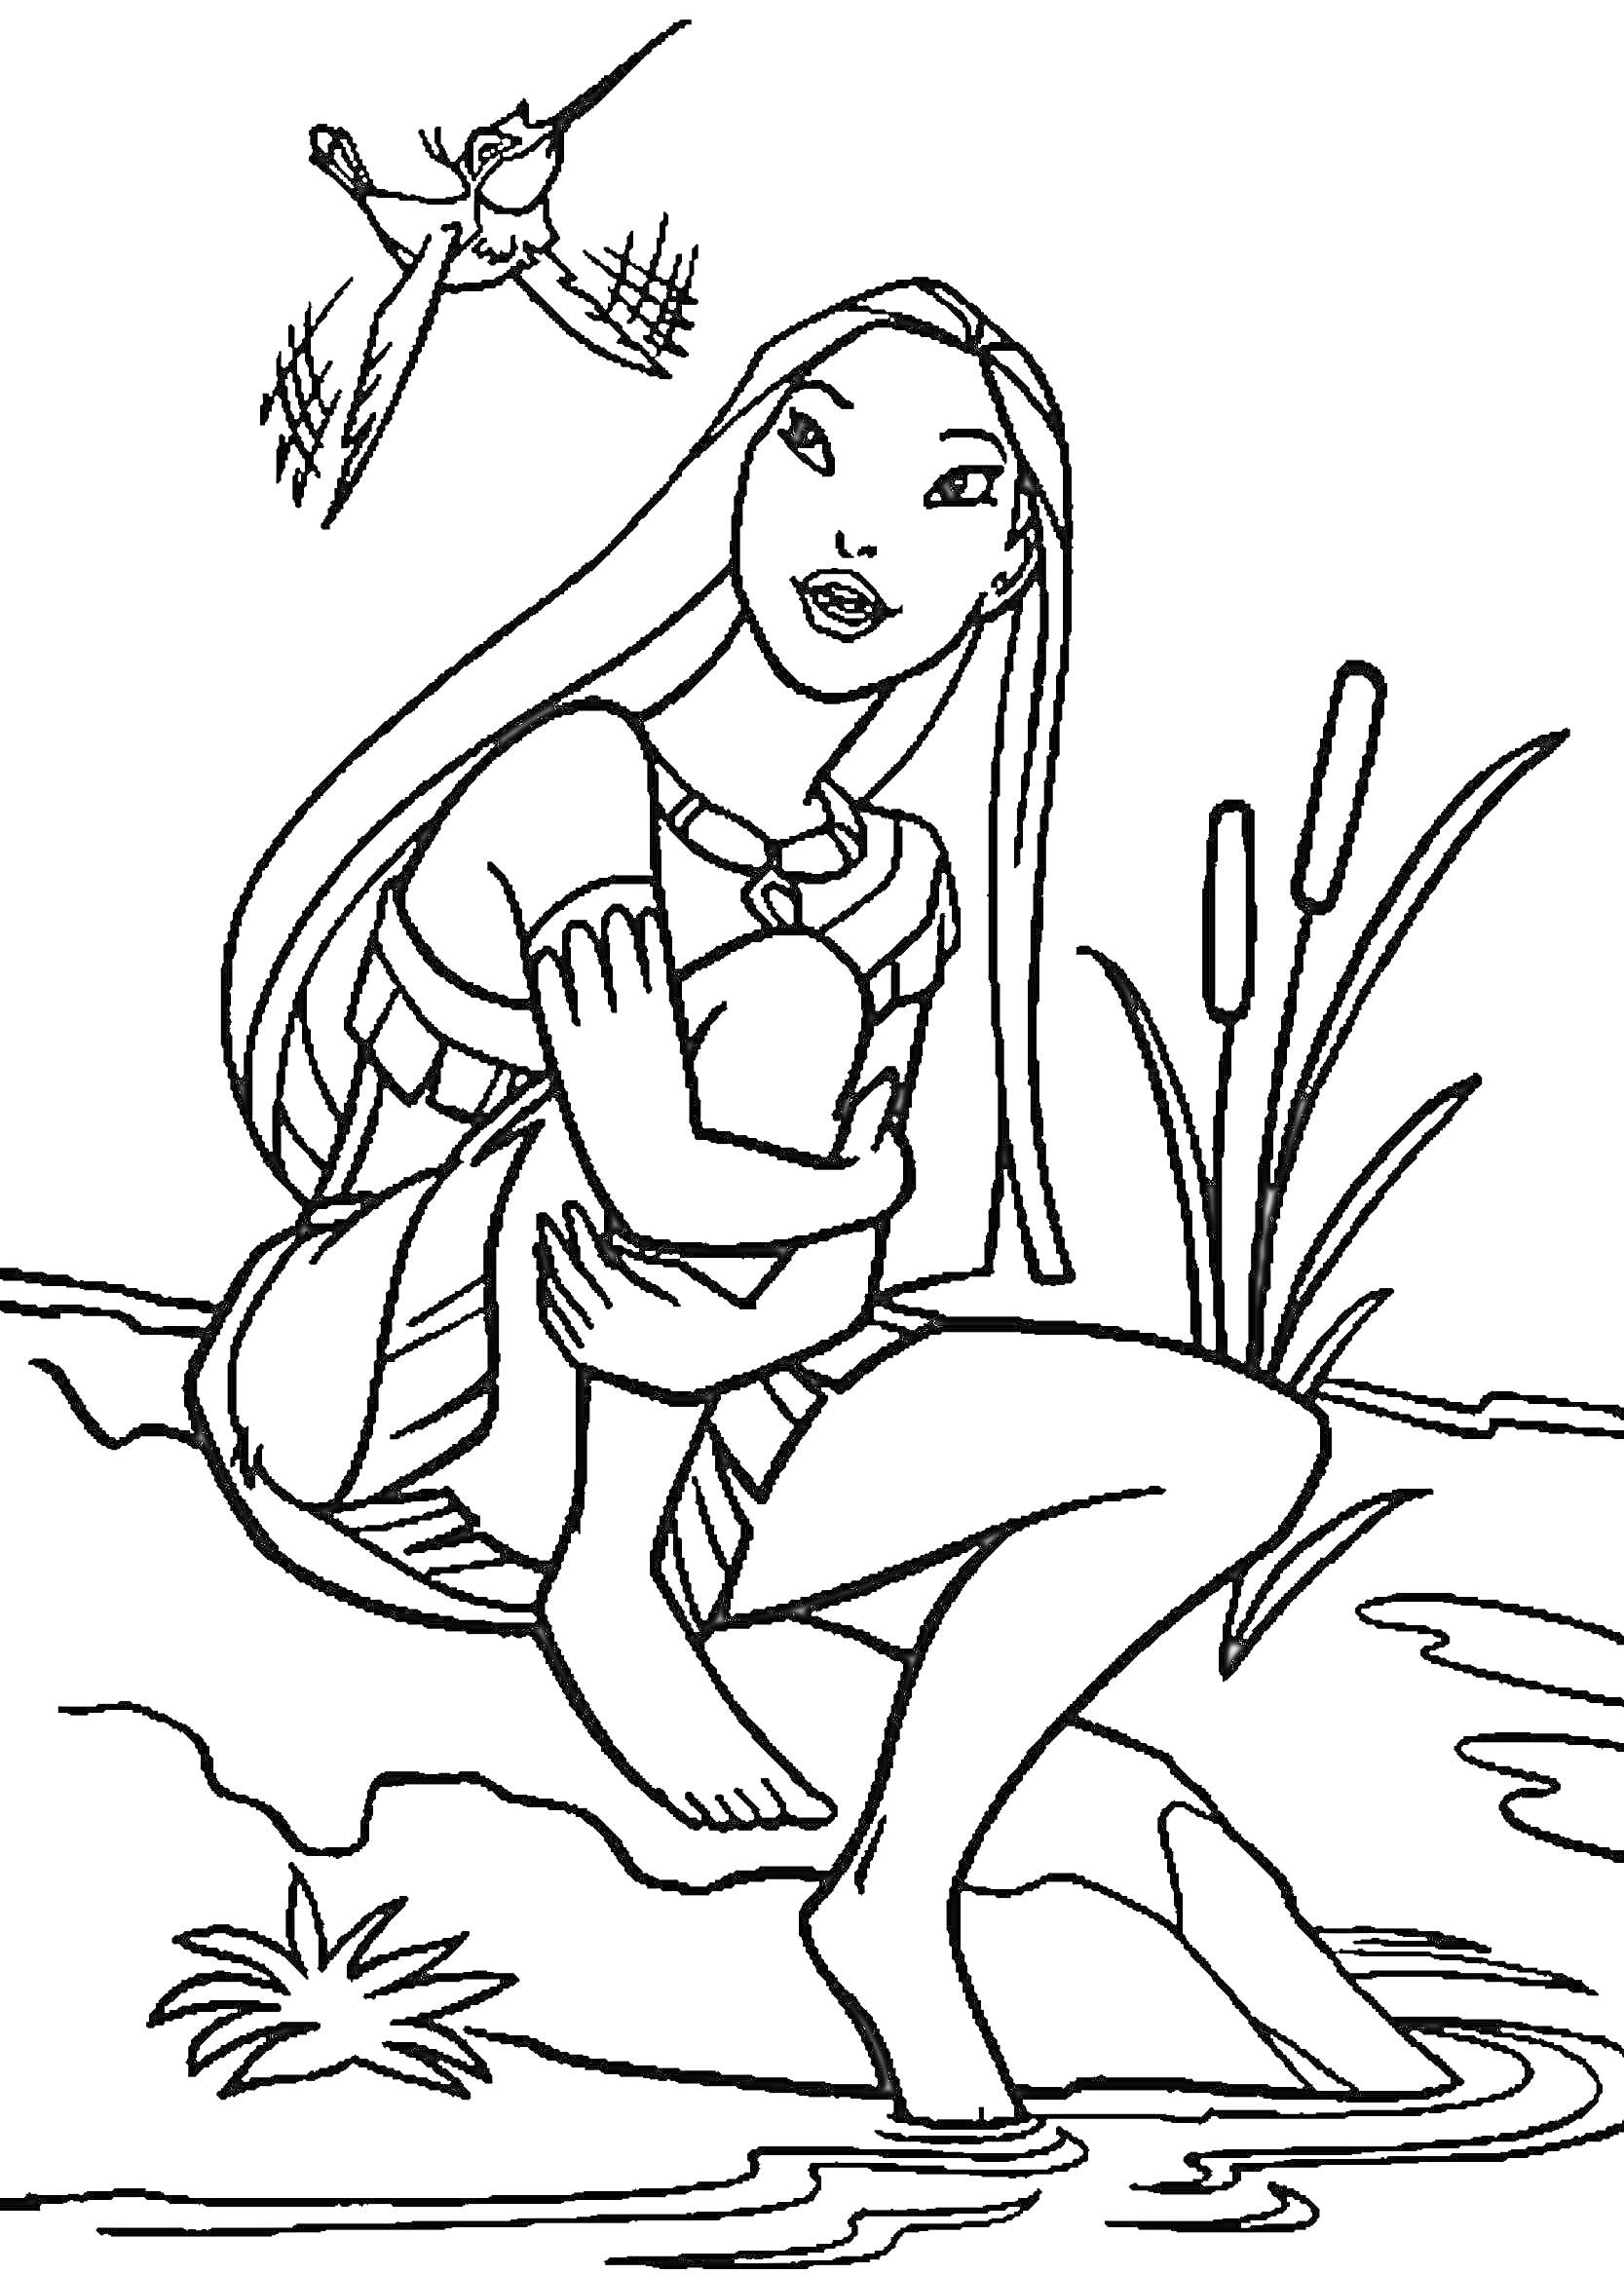 Покахонтас сидит на берегу реки со скрещенными руками и ногами, рядом с растениями, над ней летает колибри